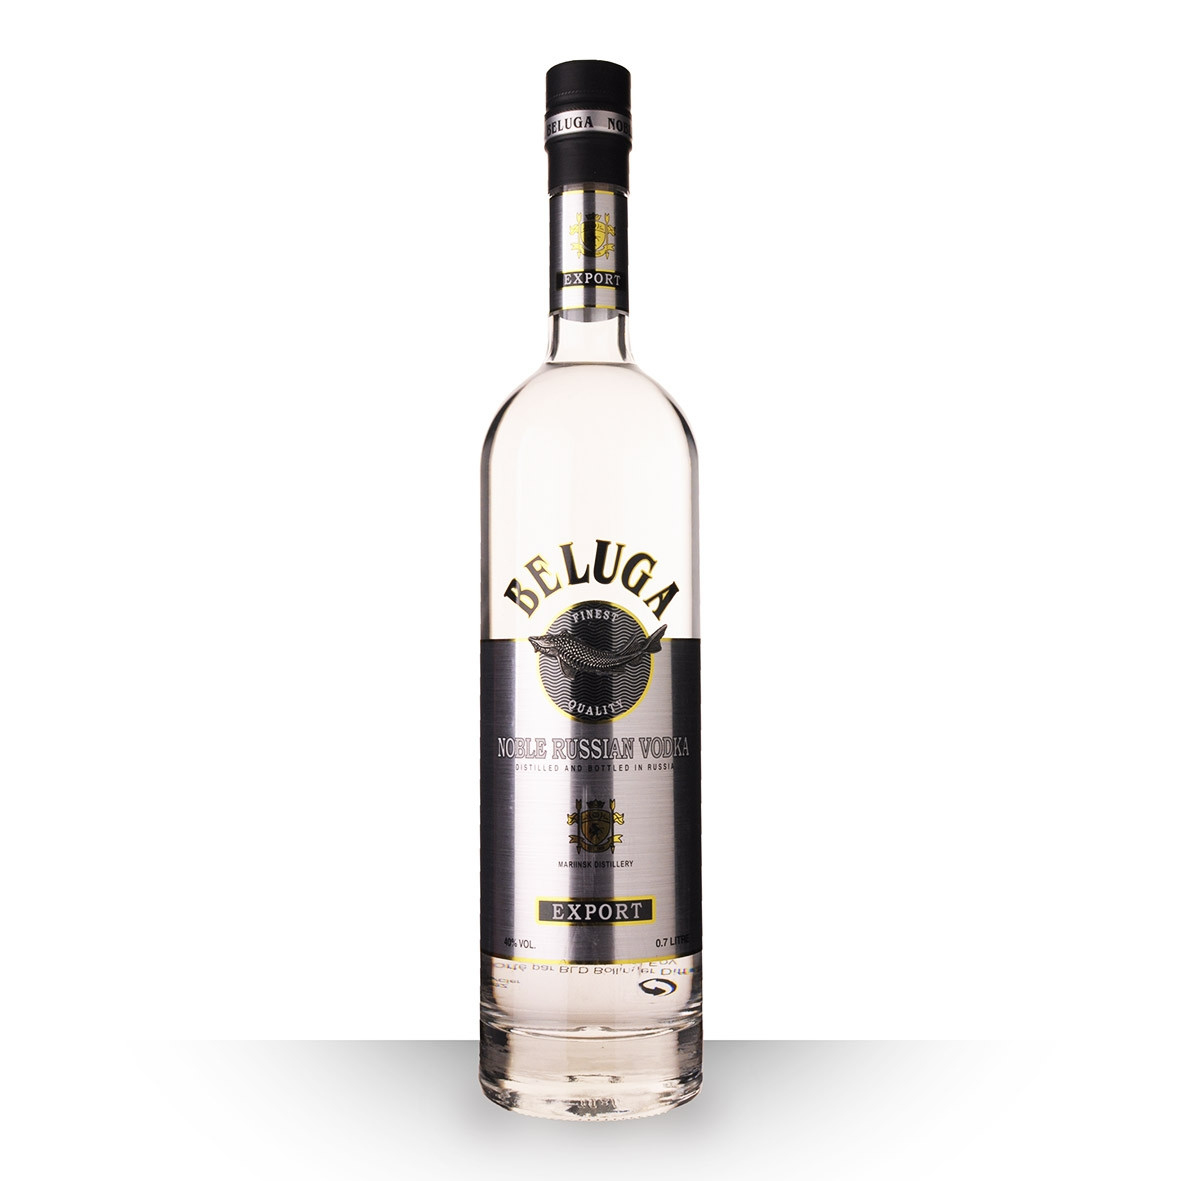 Acheter de la Vodka Beluga Noble 70cl sur notre site - Odyssee-vins